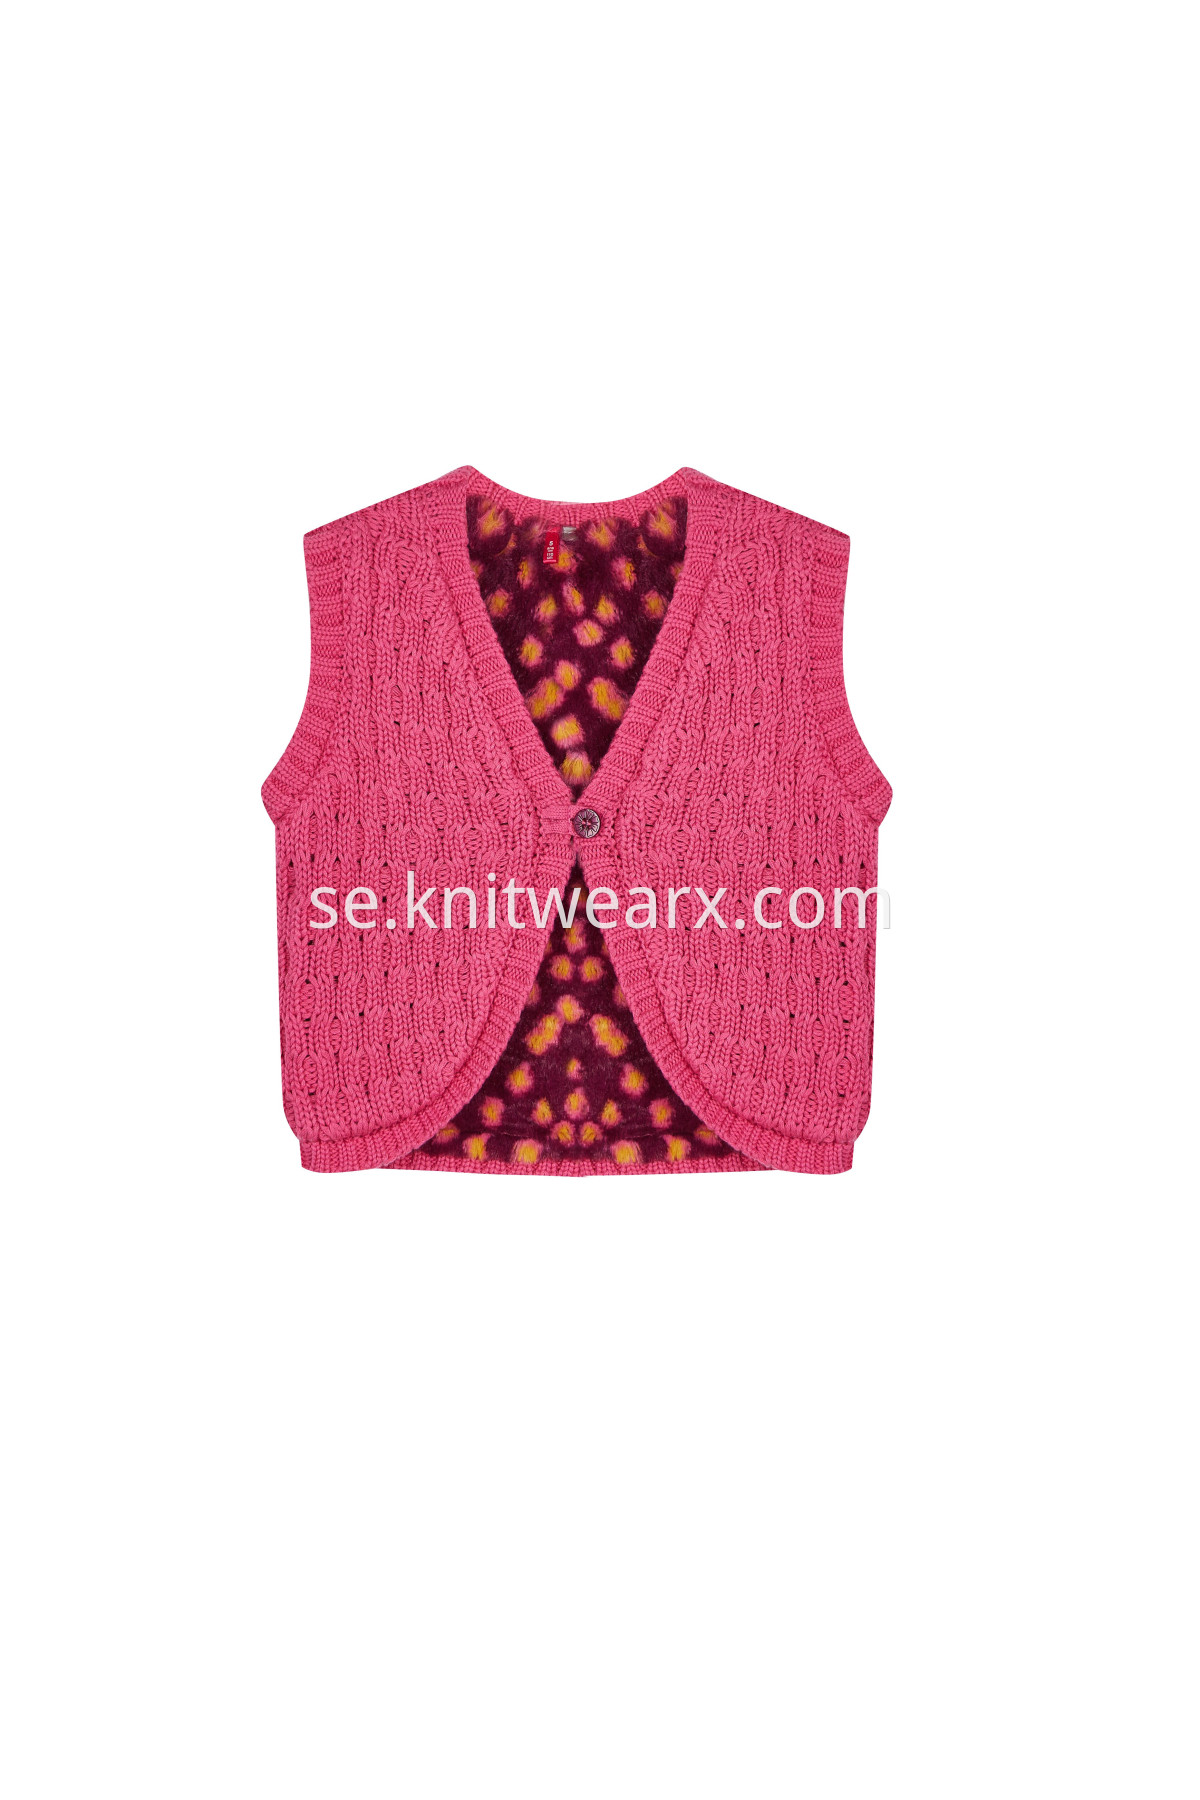 Baby Girl's Waistcoat Sweater Warm Fleece Lining Vest Top